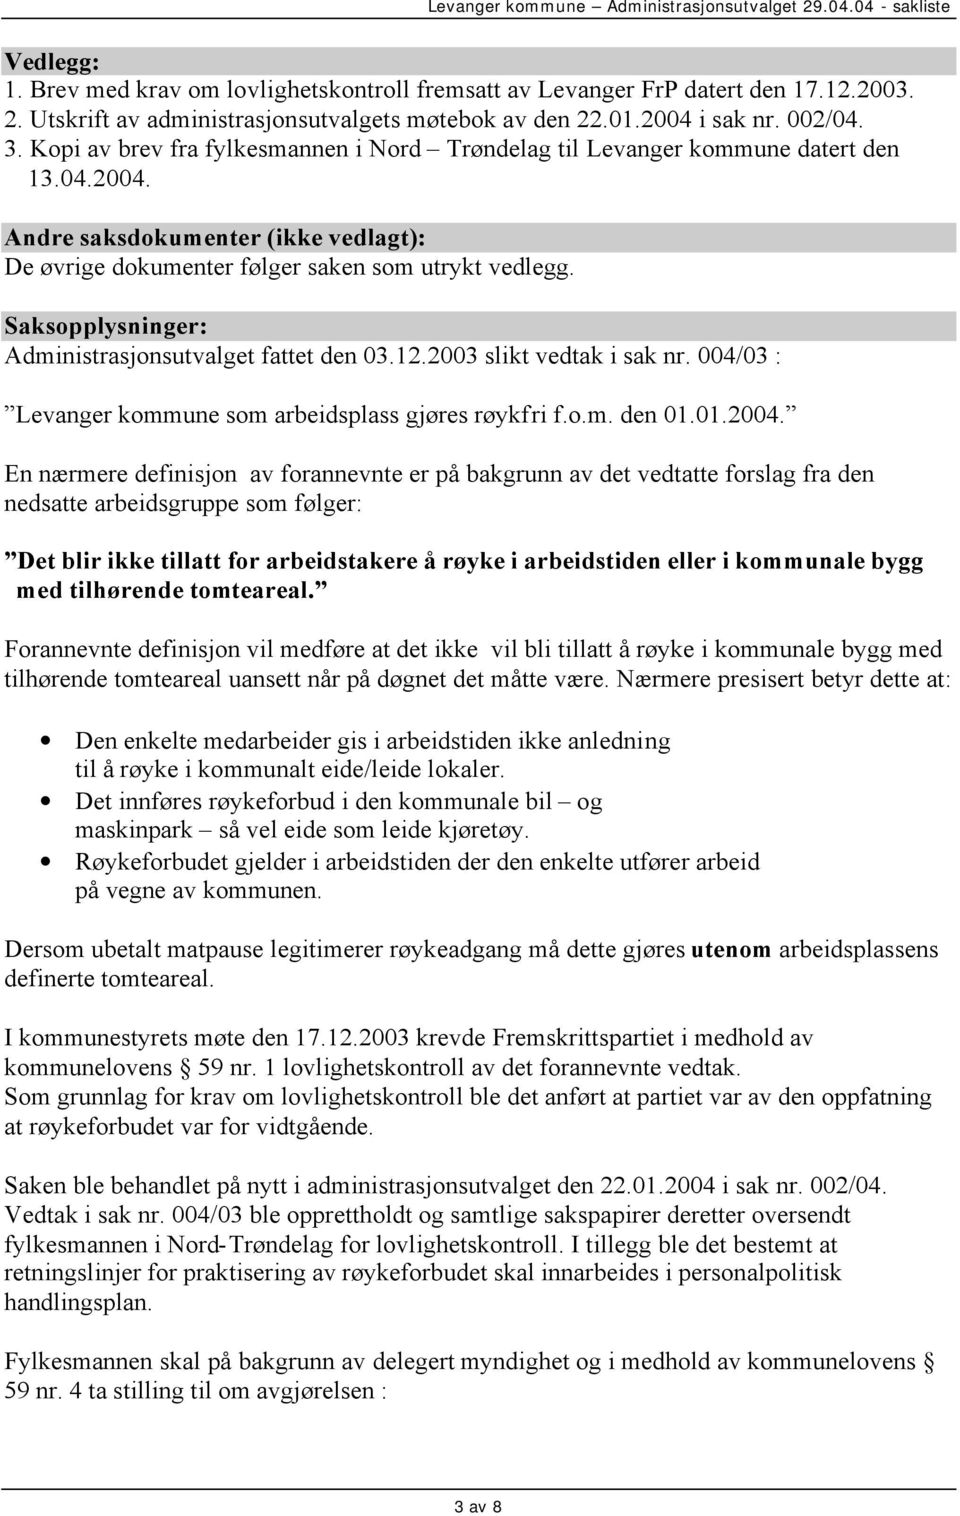 Saksopplysninger: Administrasjonsutvalget fattet den 03.12.2003 slikt vedtak i sak nr. 004/03 : Levanger kommune som arbeidsplass gjøres røykfri f.o.m. den 01.01.2004.